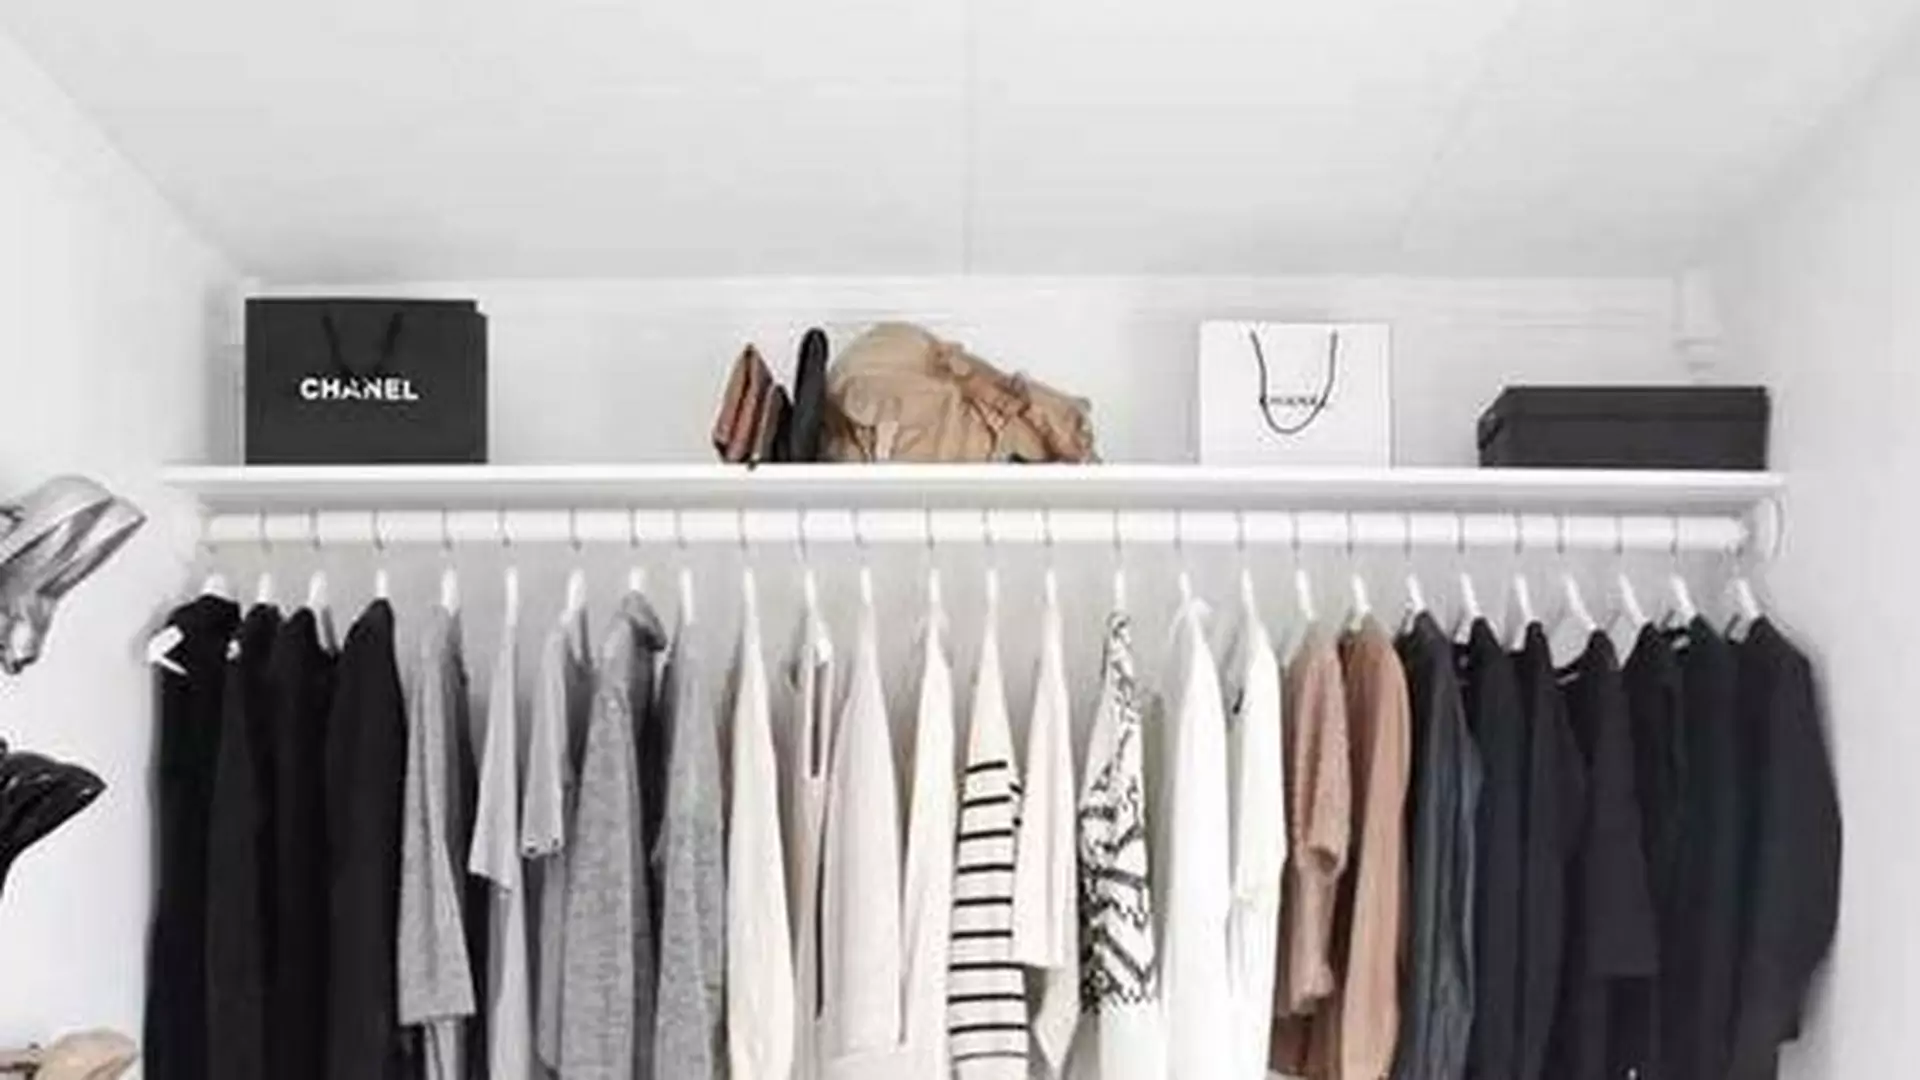 Szafy wszystkich minimalistek wyglądają tak samo: garderoba kapsułowa. Tylko 37 ubrań!